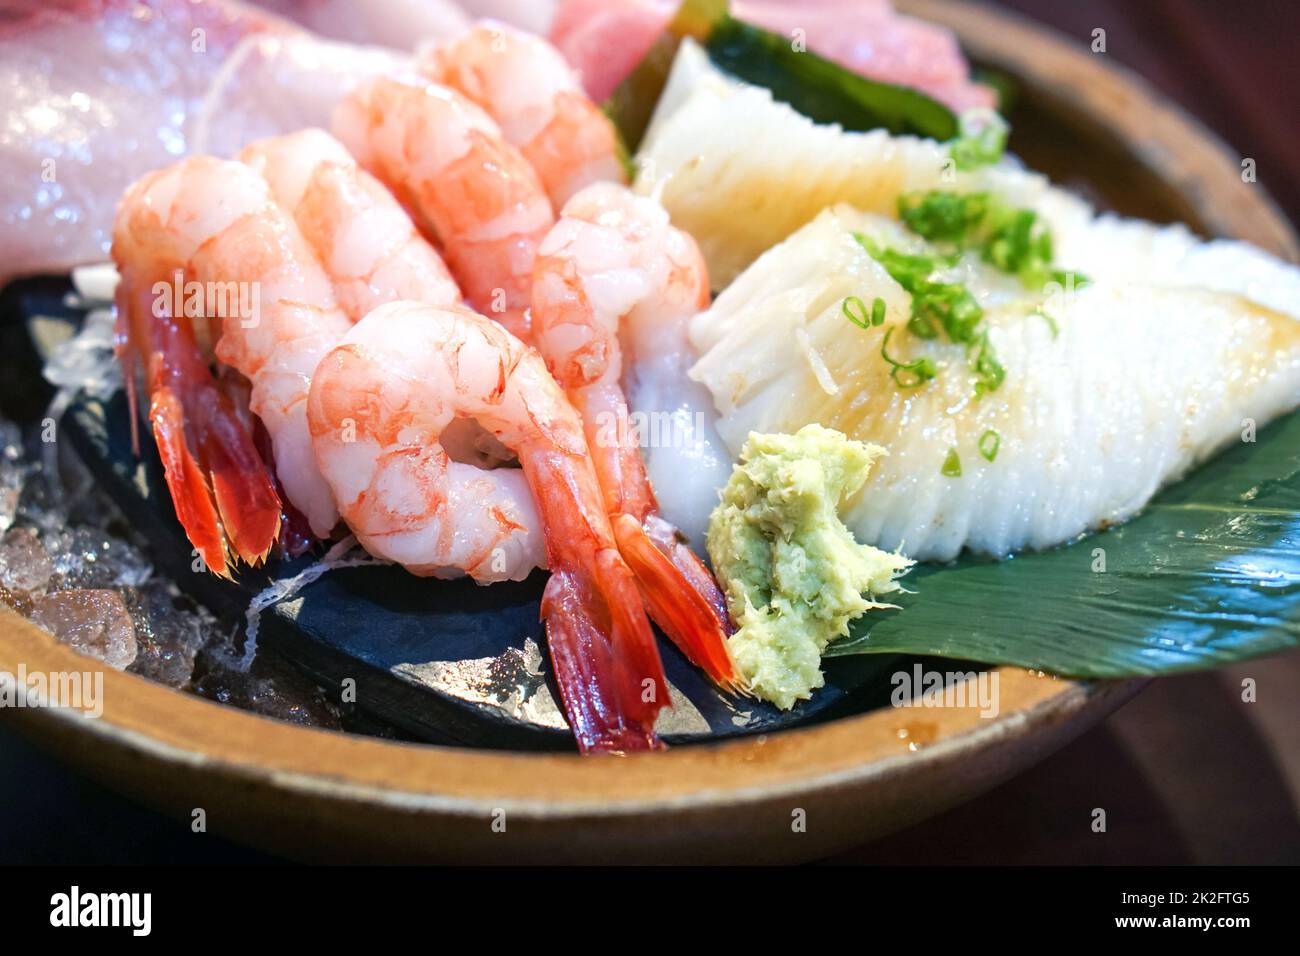 L'ensemble sashimi est magnifiquement disposé dans une assiette en bois. Buffet de cuisine japonaise. Choix du chef : crevettes, engawa, thon et hamachi Banque D'Images